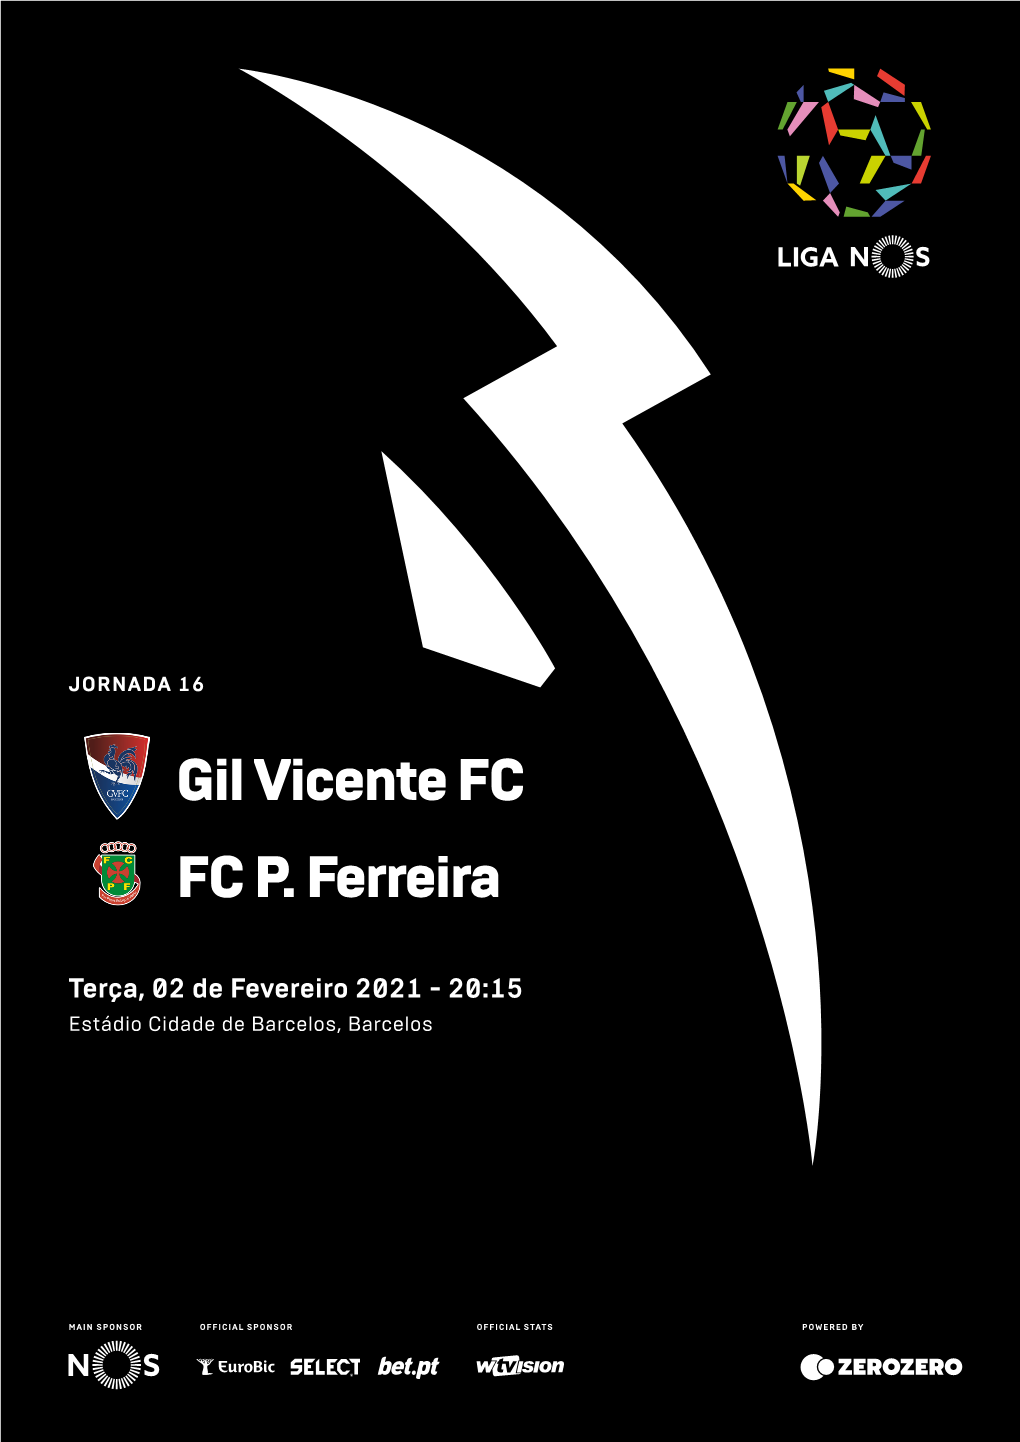 Gil Vicente FC FC P. Ferreira